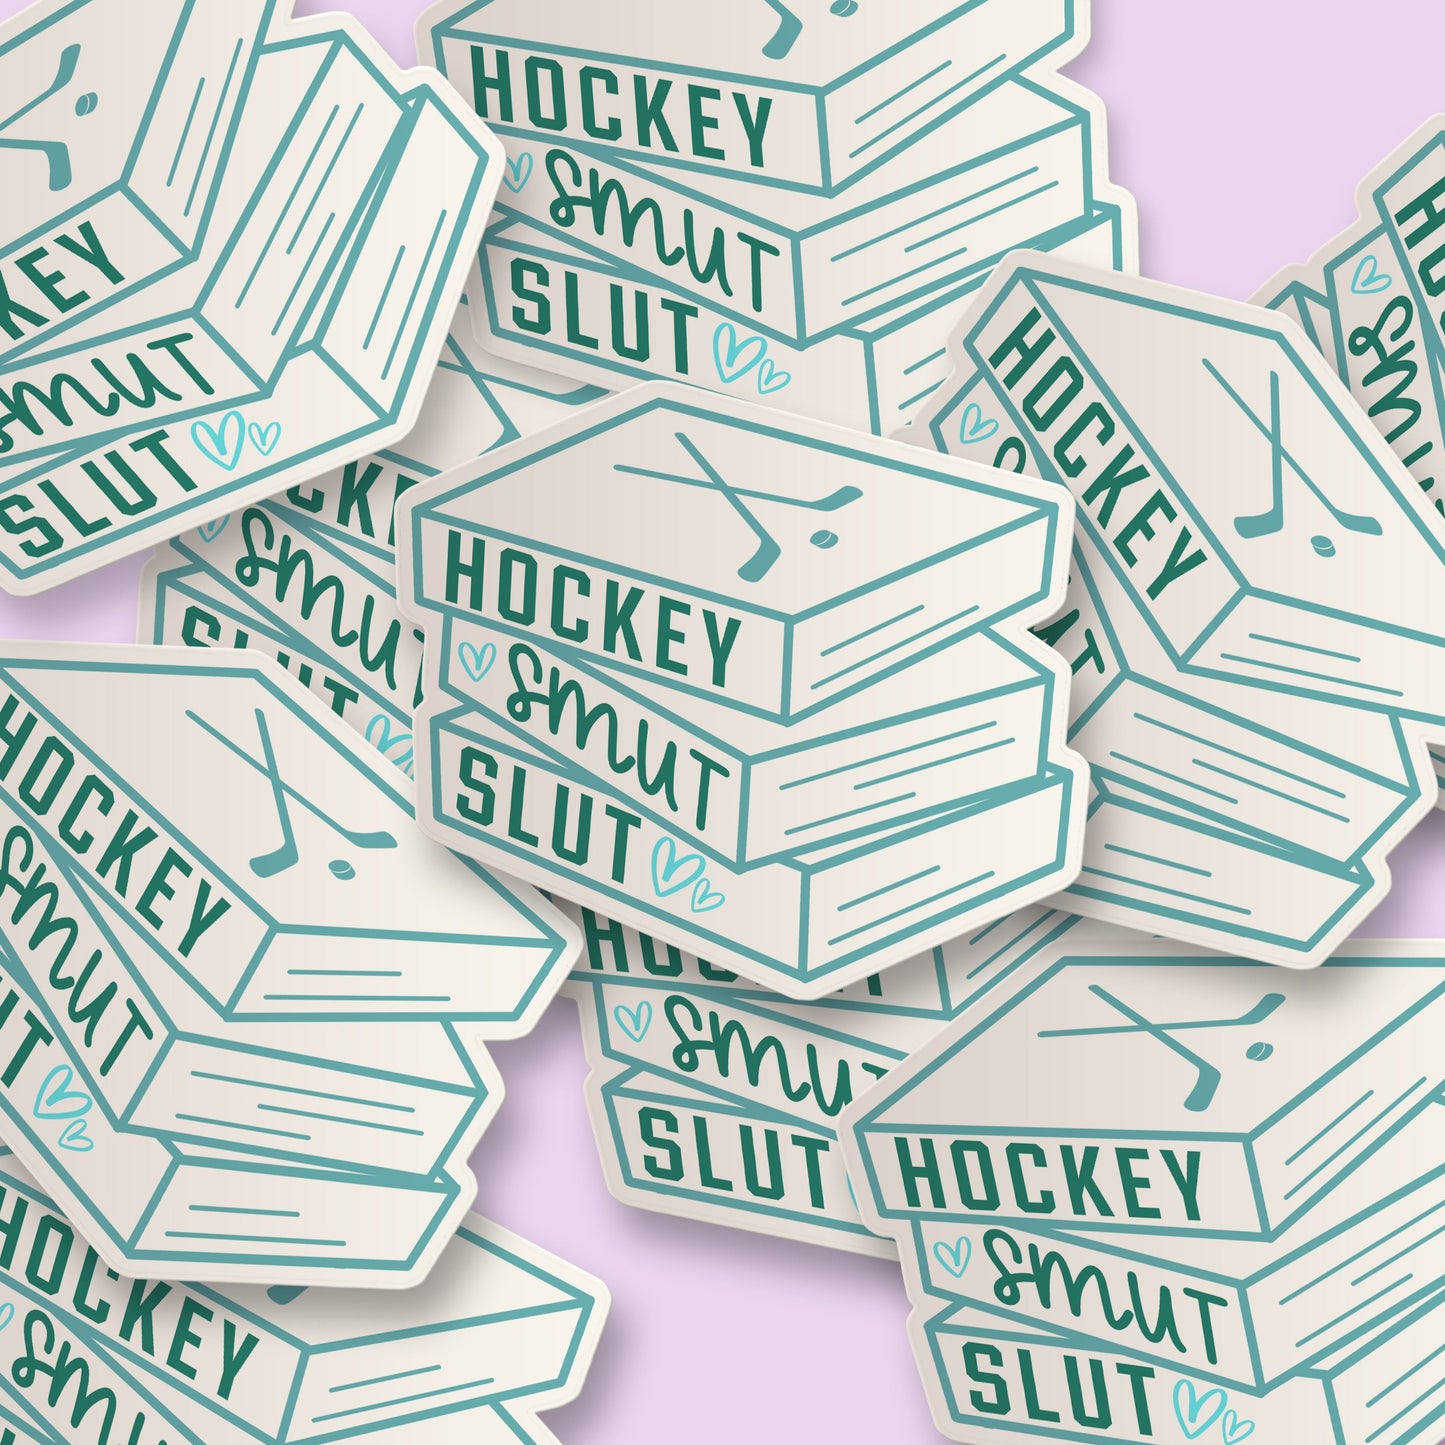 Hockey Smut Slut Sticker